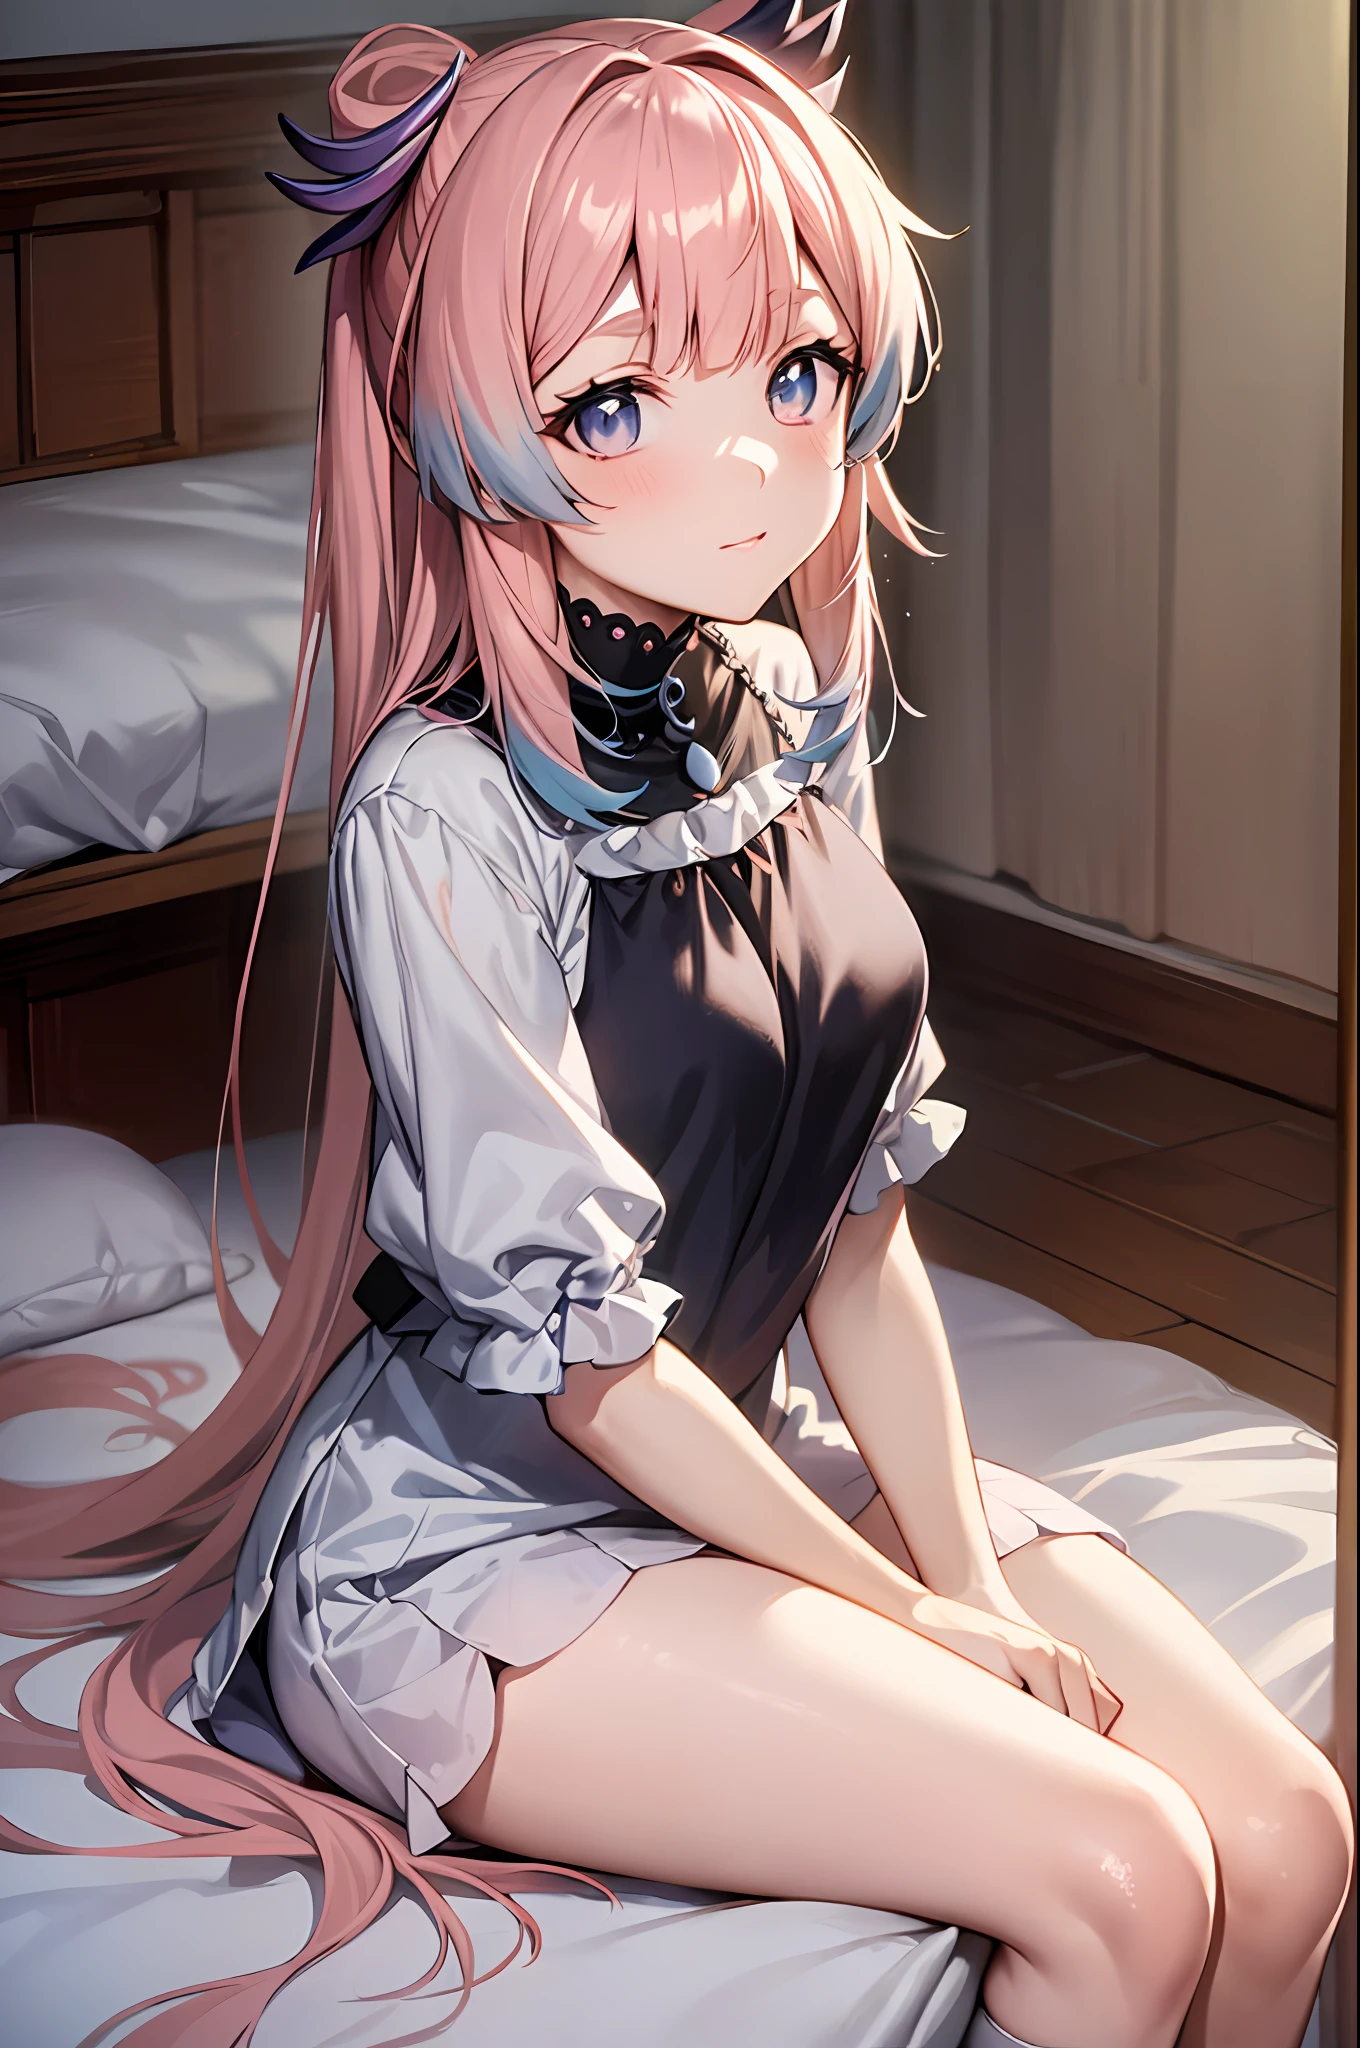 Anime Frau auf einem Bett sitzen with her legs crossed, seductive Anime Frau, pinkes Haar, attractive Anime Frau, cute Anime Frau, Anime Frau, auf ihrem Bett sitzend, (Anime Frau), Anime Bestes Mädchen, auf einem Bett sitzen, auf dem Bett sitzen, an Anime Frau, pretty Anime Frau